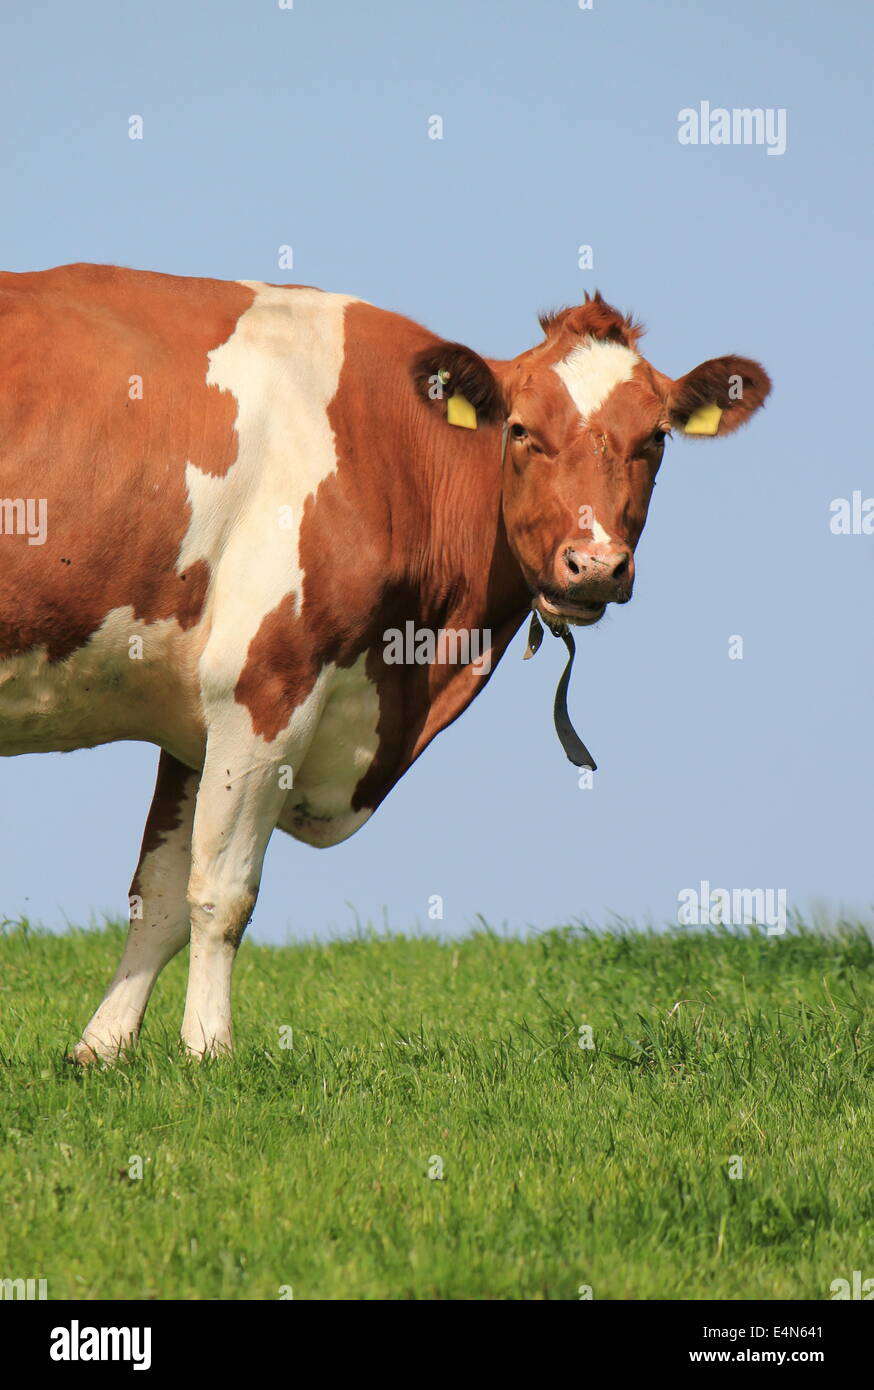 Half cow Stock Photo